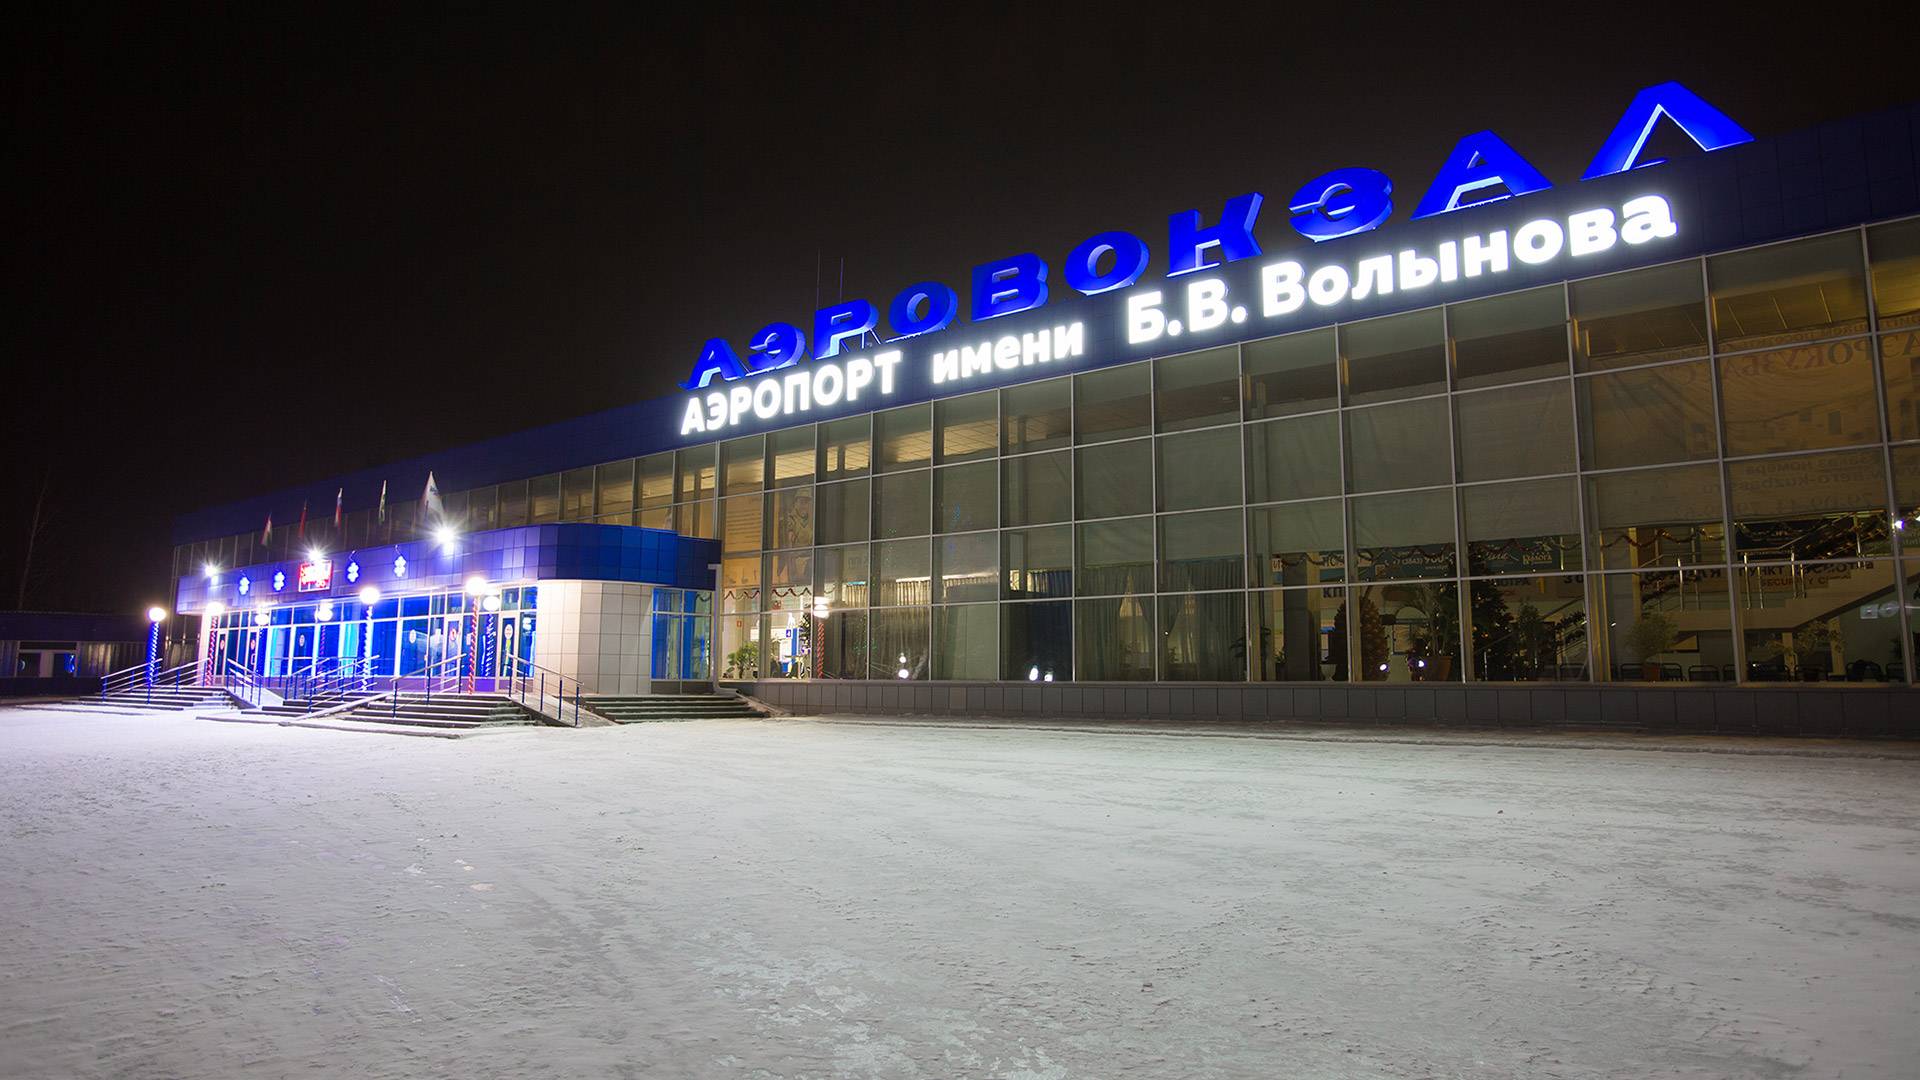 Описание, основная информация и фото международного аэропорта новокузнецка. какие гостиницы рядом и как добраться?